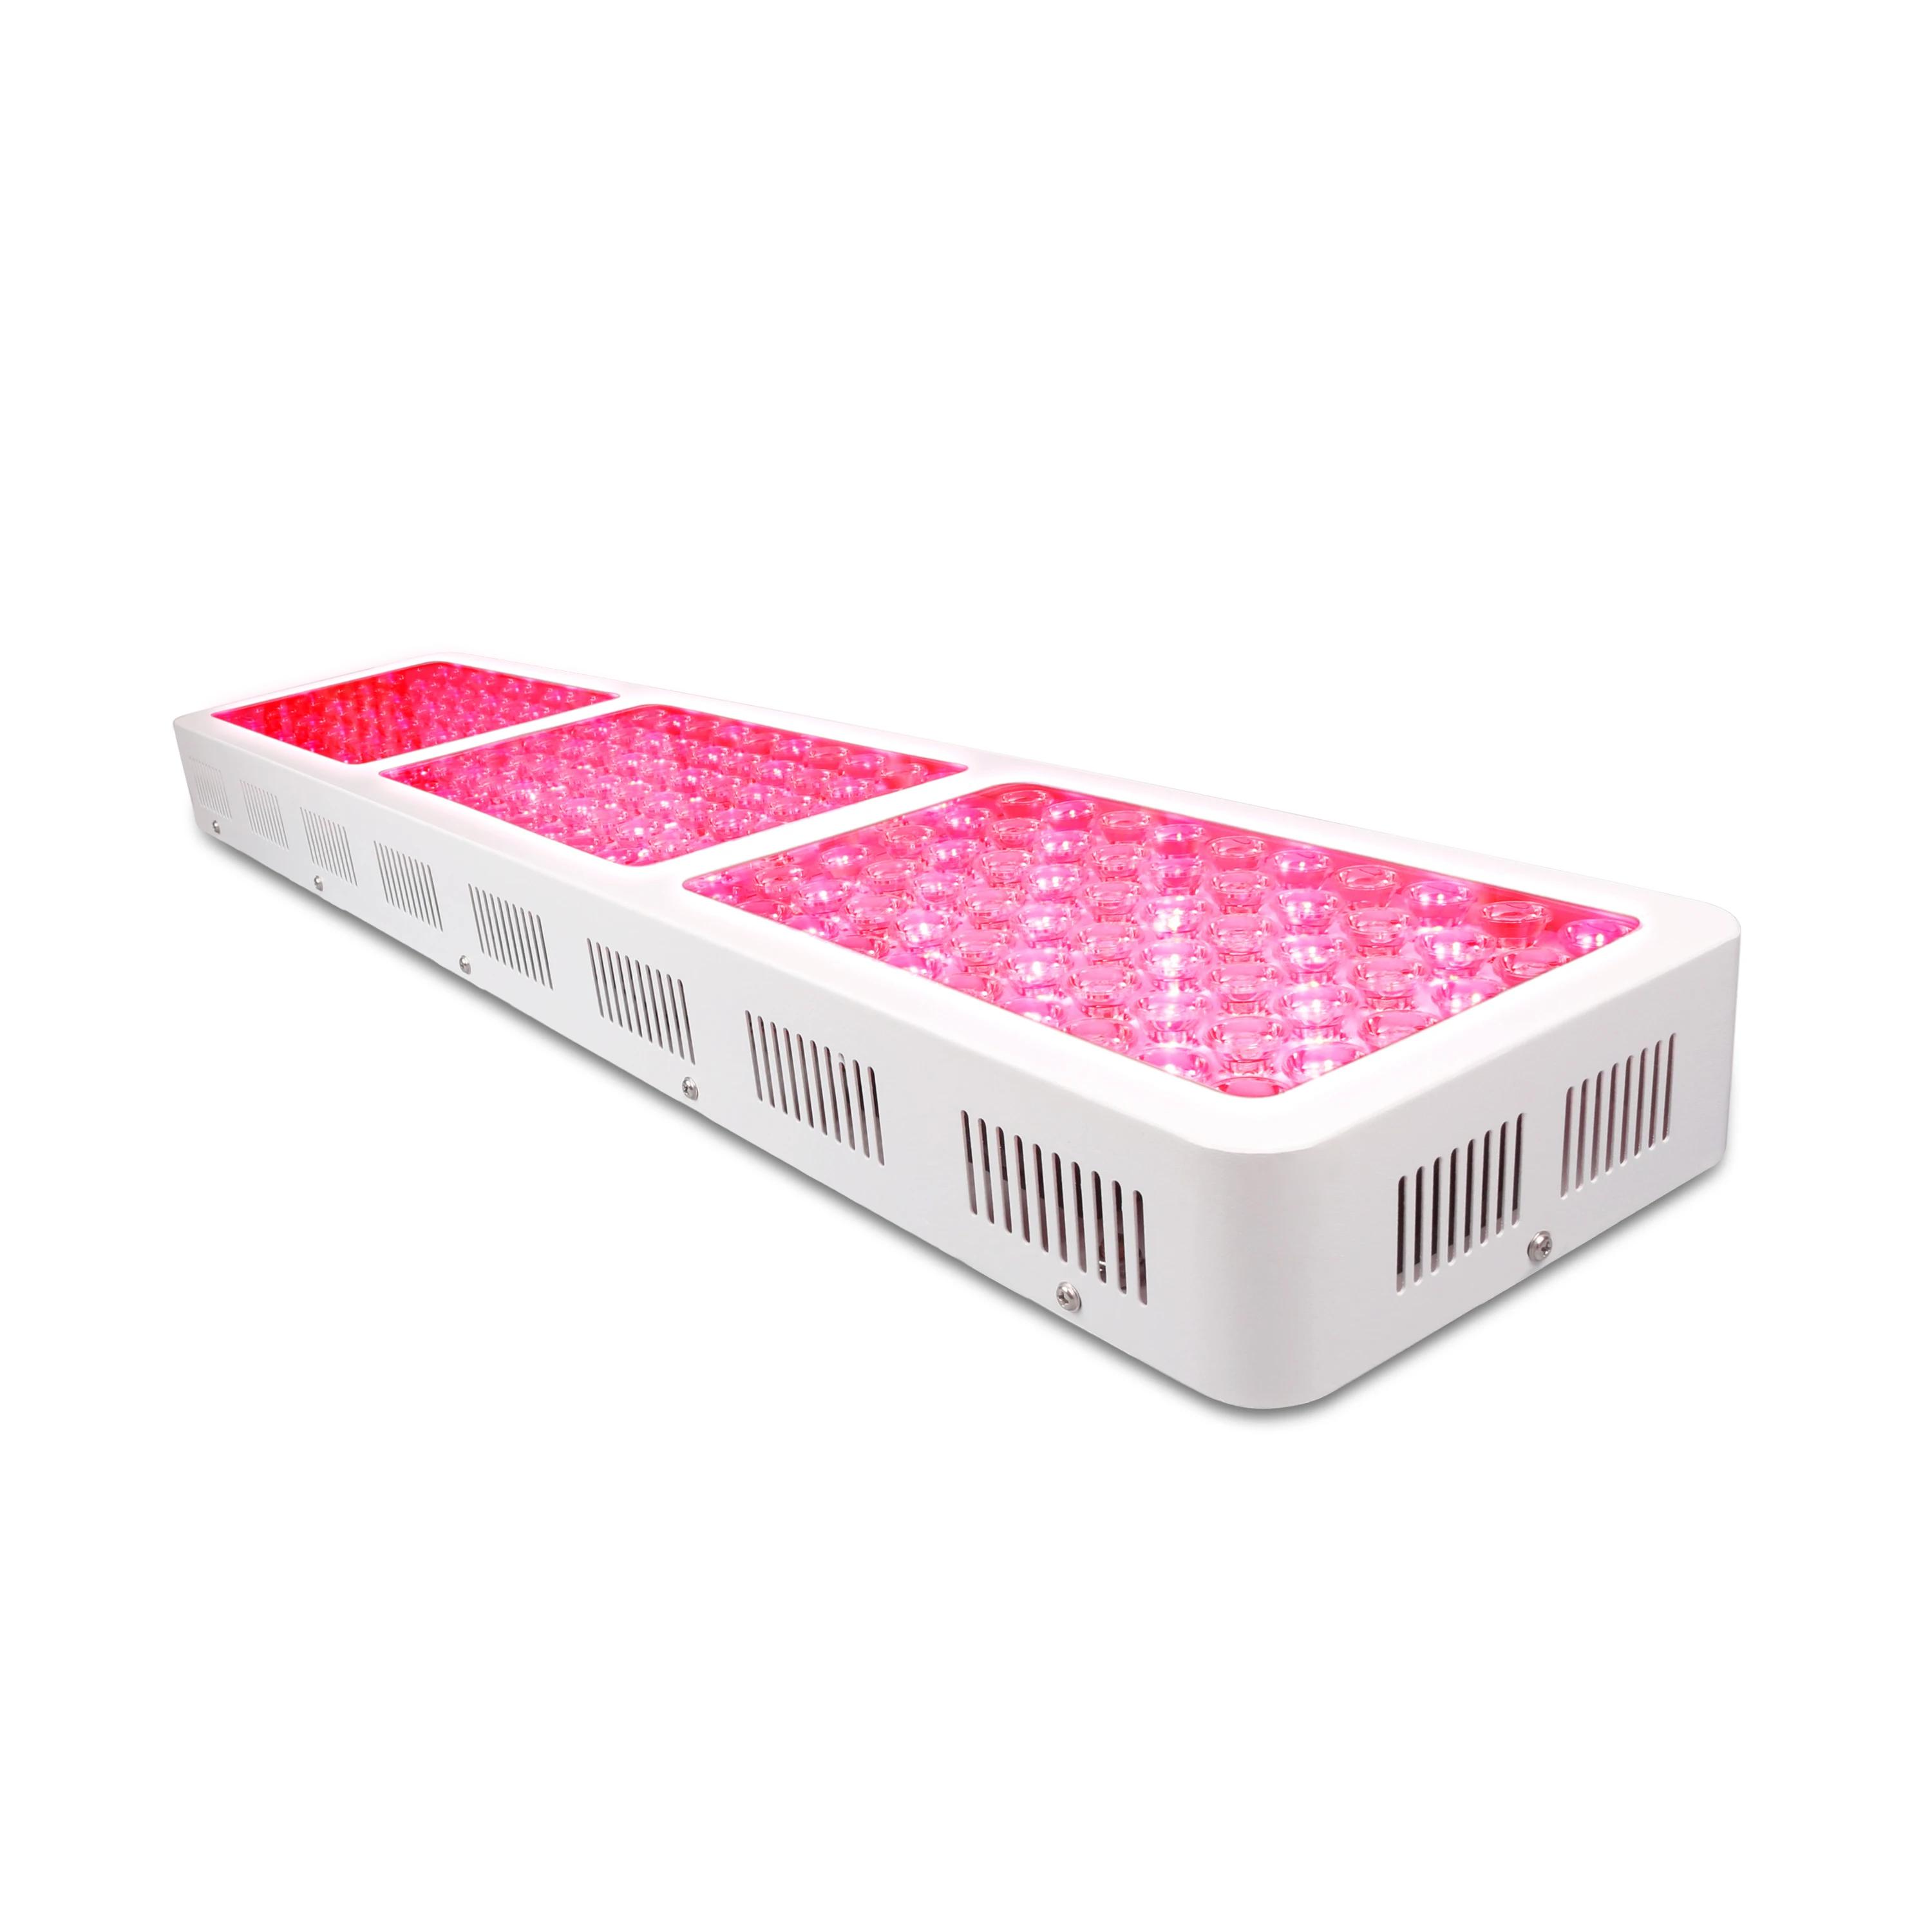 SGROW Factory 900W Красная инфракрасная световая терапия нм PM900 красная светодиодная световая терапевтическая панель для облегчения боли (62353843439)